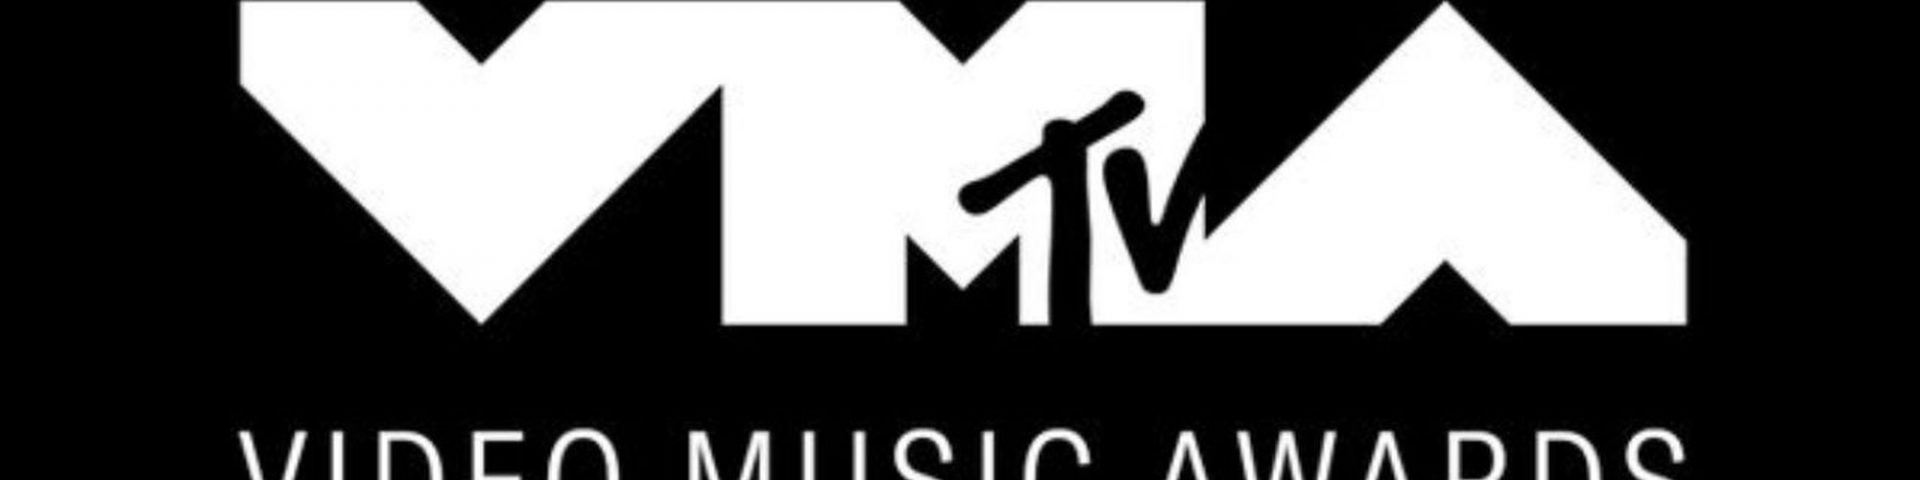 MTV VMA 2019: ecco tutti i cantanti che si esibiranno